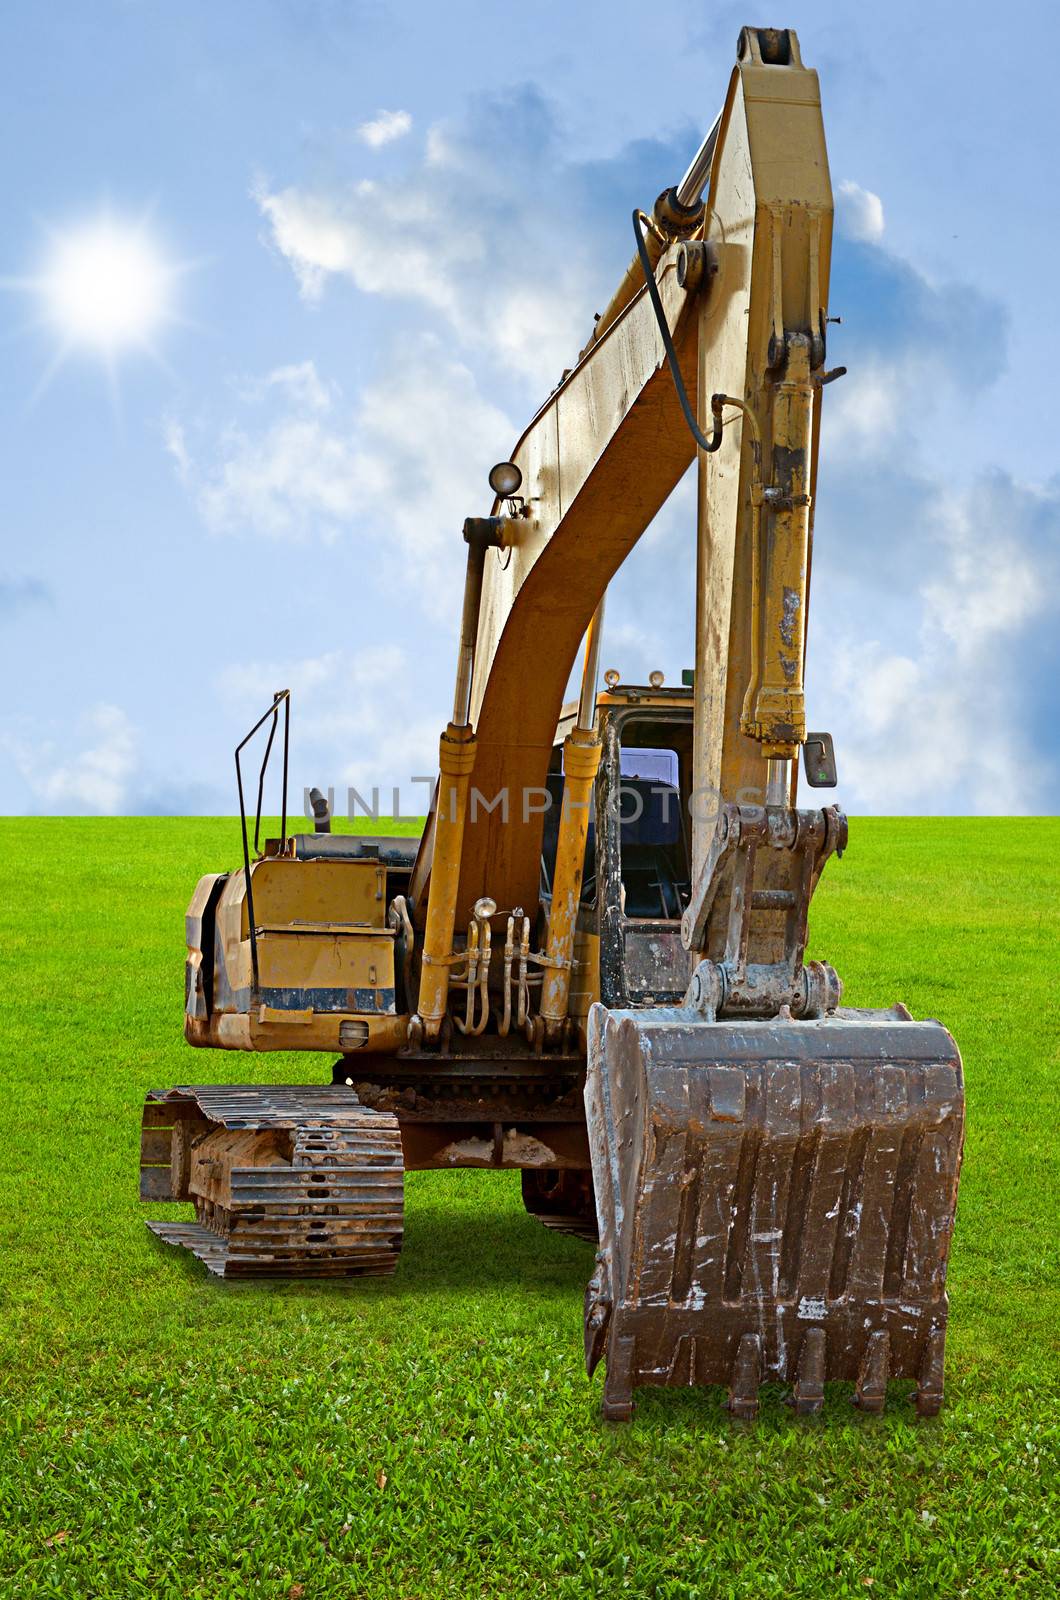 Track-type loader excavator machine on green grass field